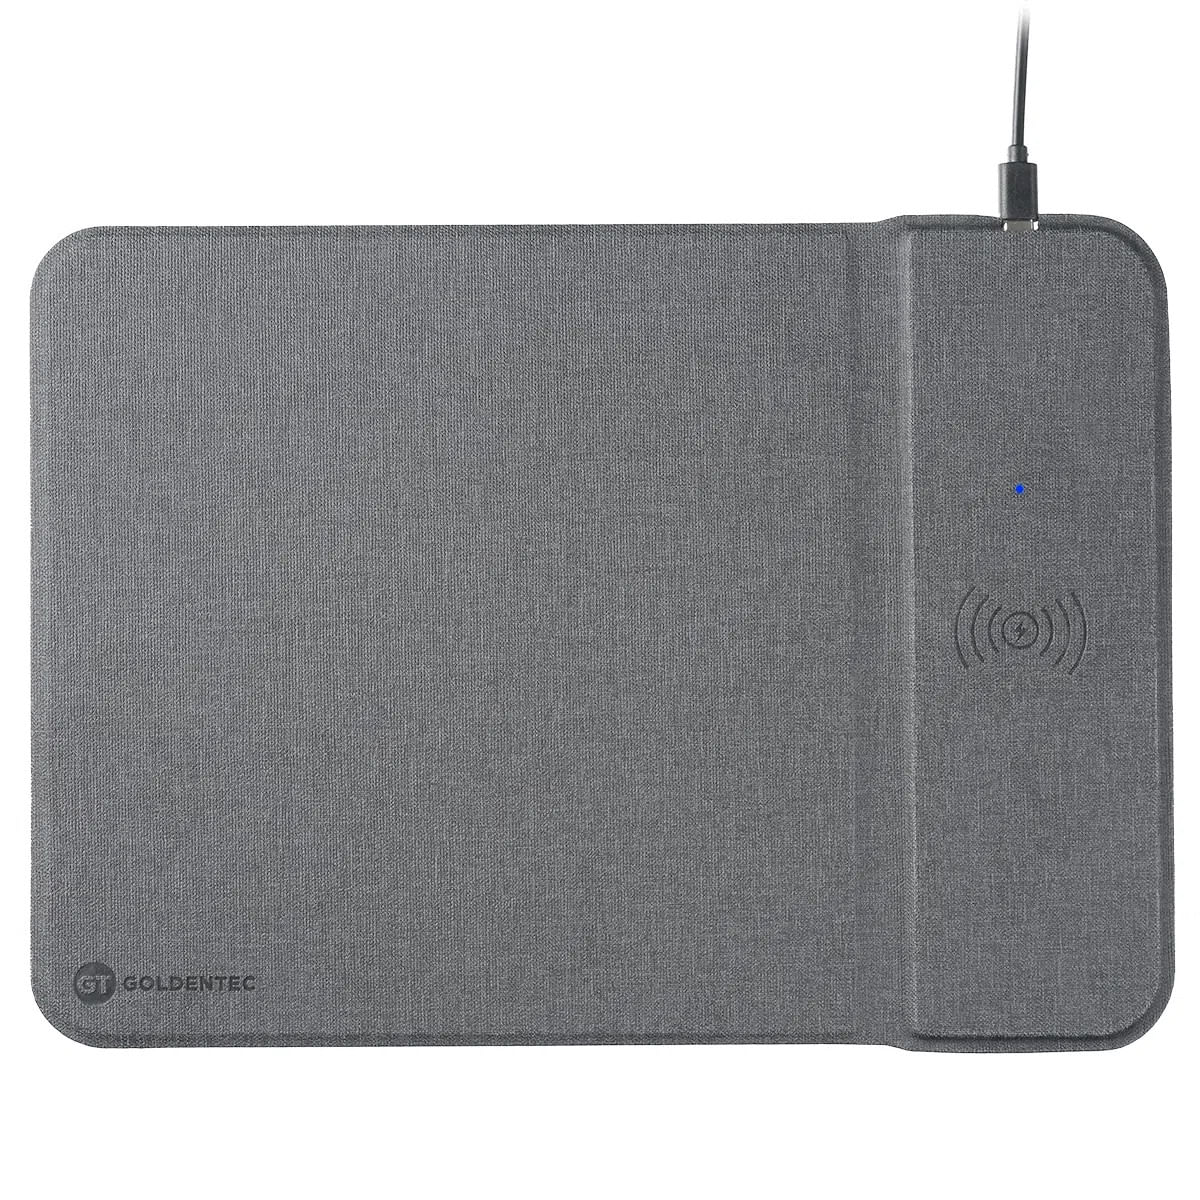 Mousepad Qi Charger com Carregamento Sem fio para Smartphone | Goldentec